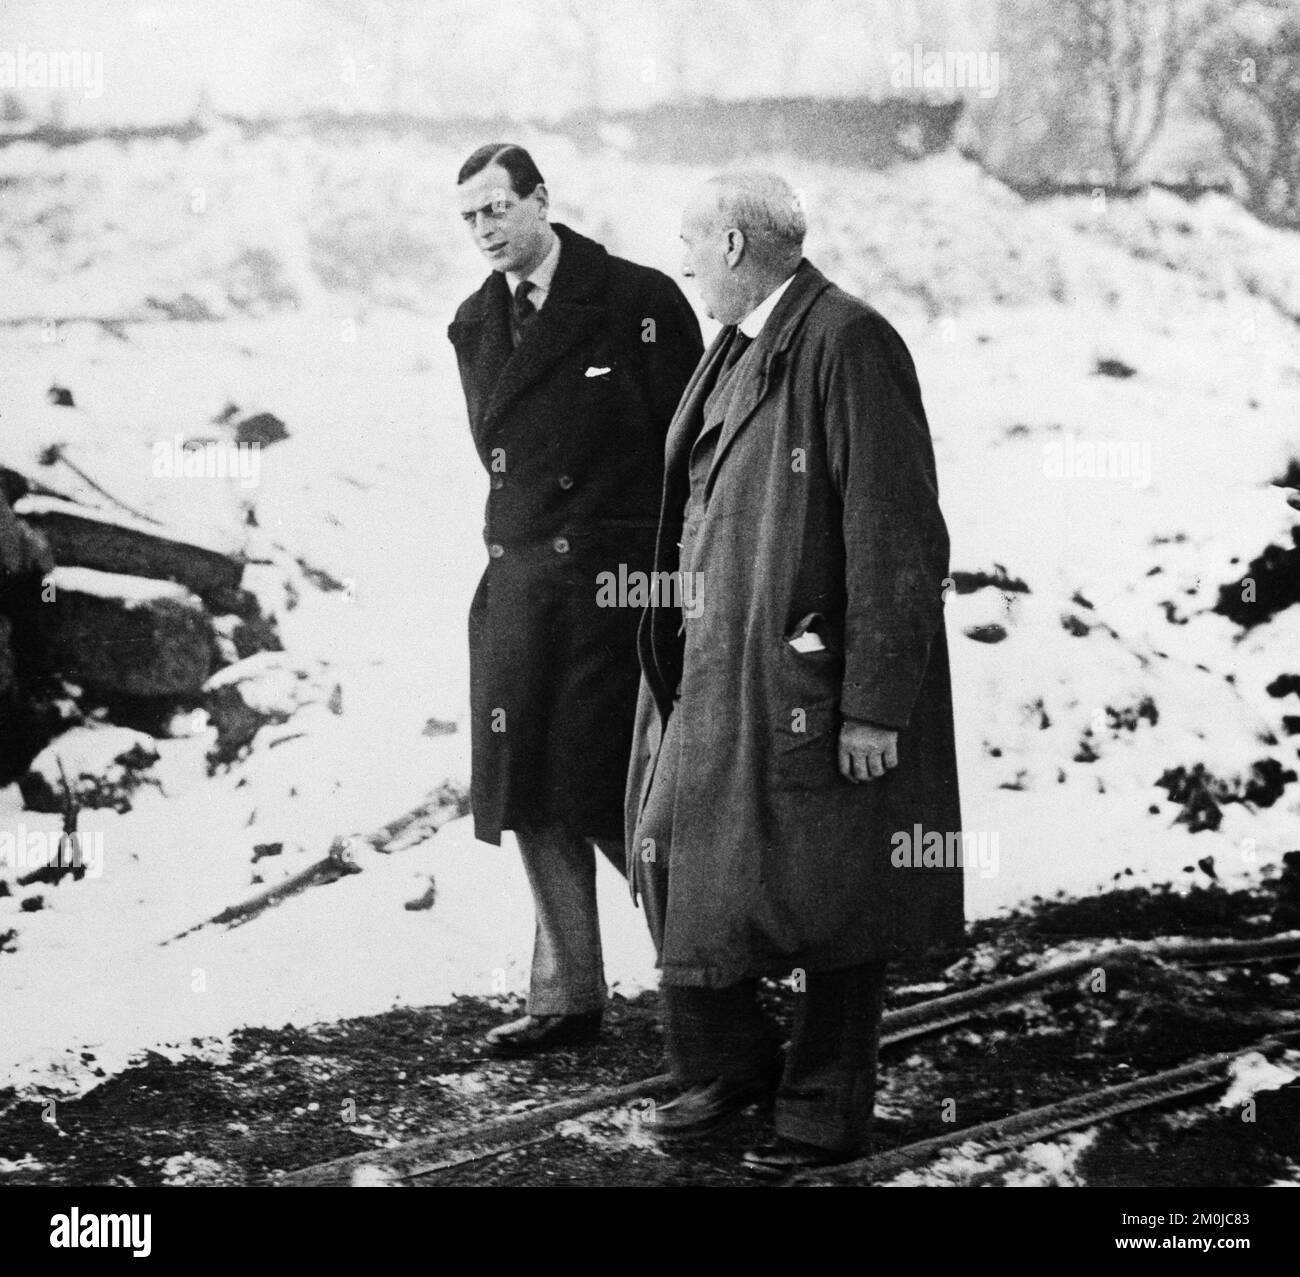 Photographie d'époque en noir et blanc prise le 18th décembre 1935 montrant le prince George, duc de Kent, lors d'une visite à Waingroves Brickyard à Codnor, dans le Derbyshire, en Angleterre. Le duc a été tué dans un accident d'avion alors qu'il était en service dans la Royal Air Force, en 1942. Banque D'Images